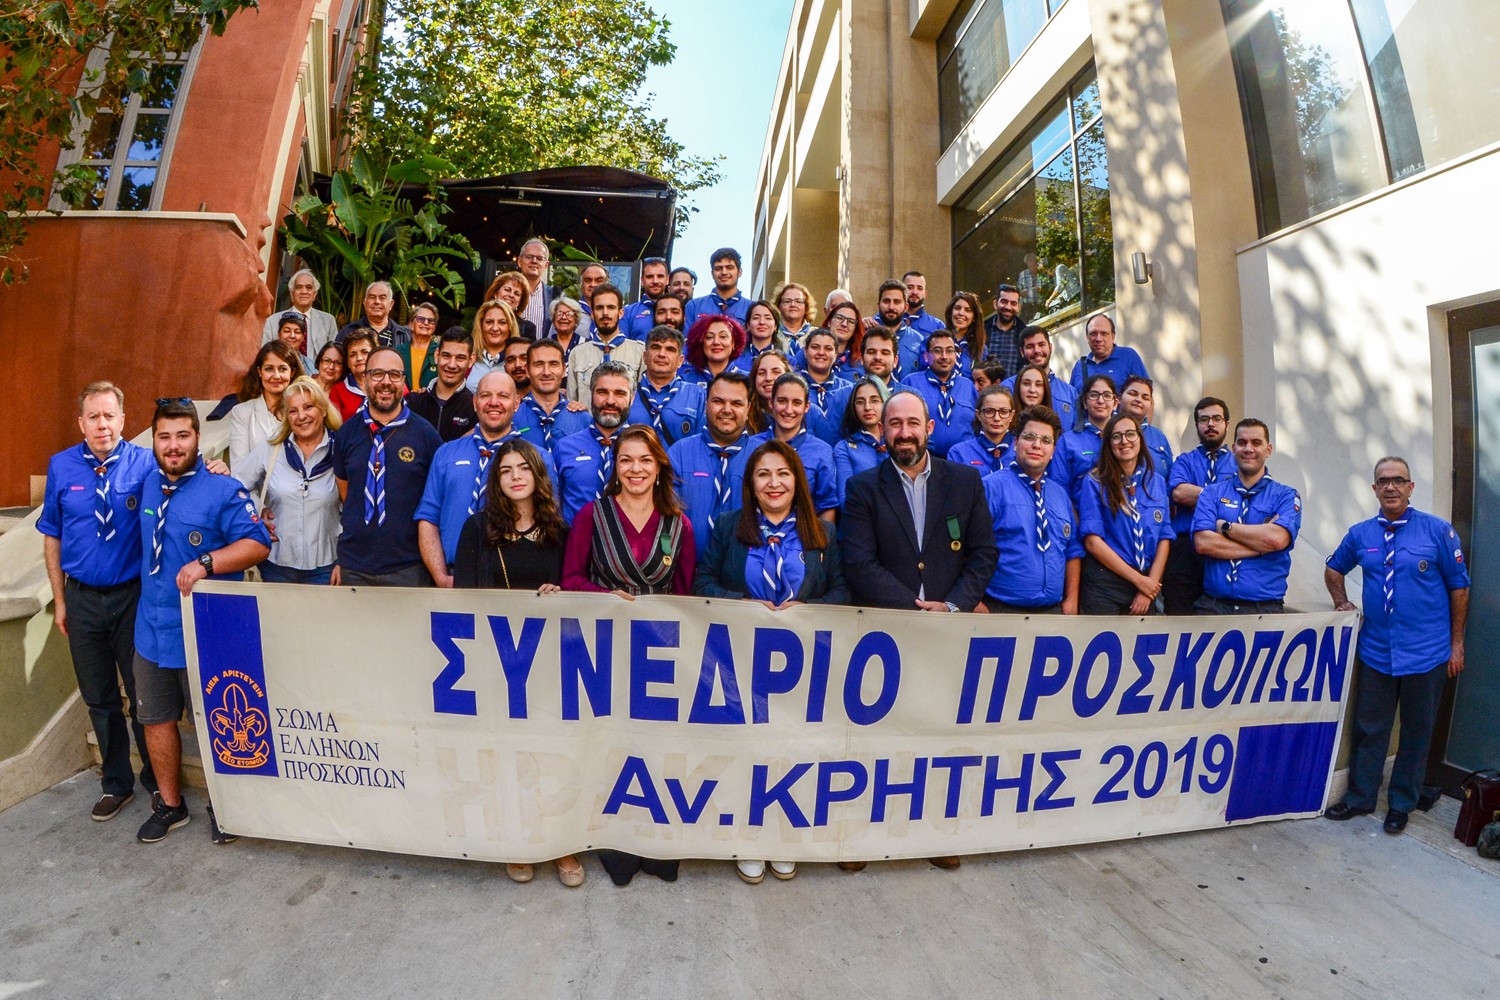 Πετυχημένο το συνέδριο Προσκόπων Ανατολικής Κρήτης